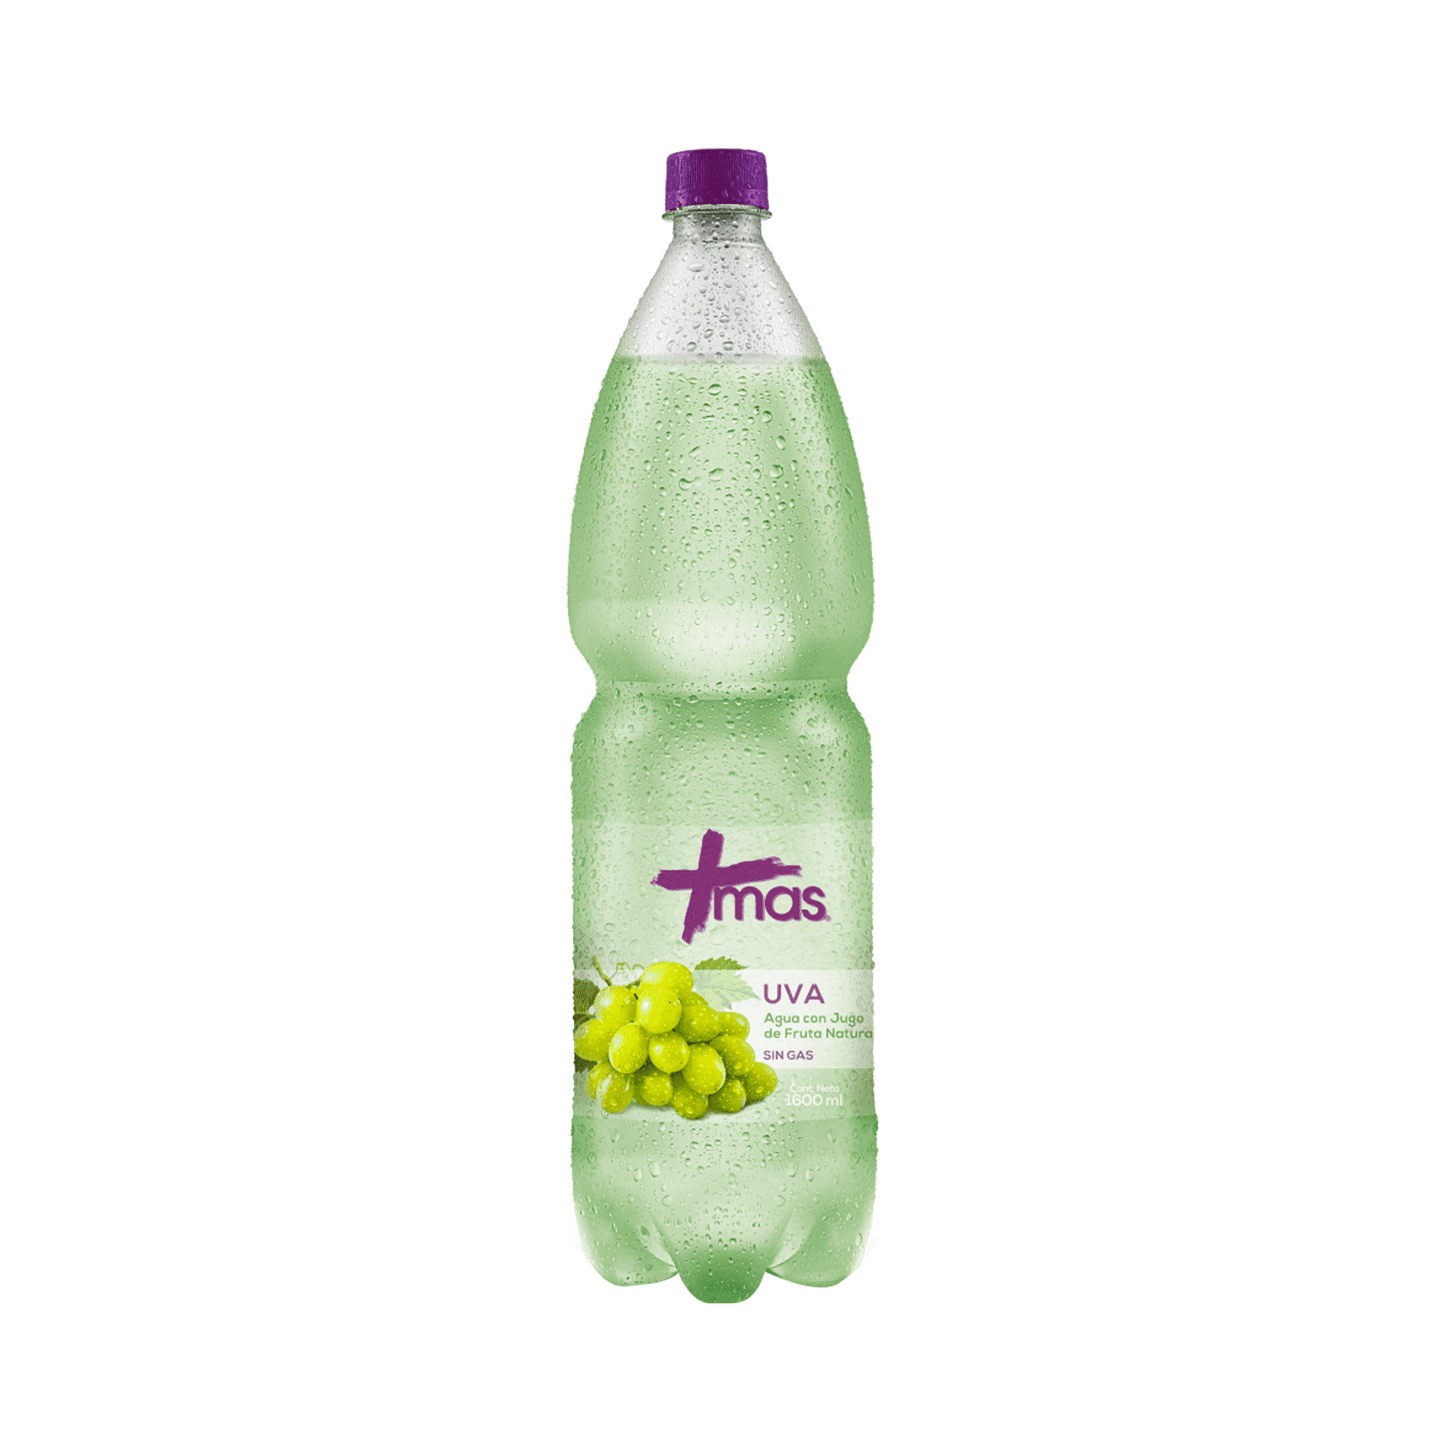 Agua Más saborizadas  1.6 L